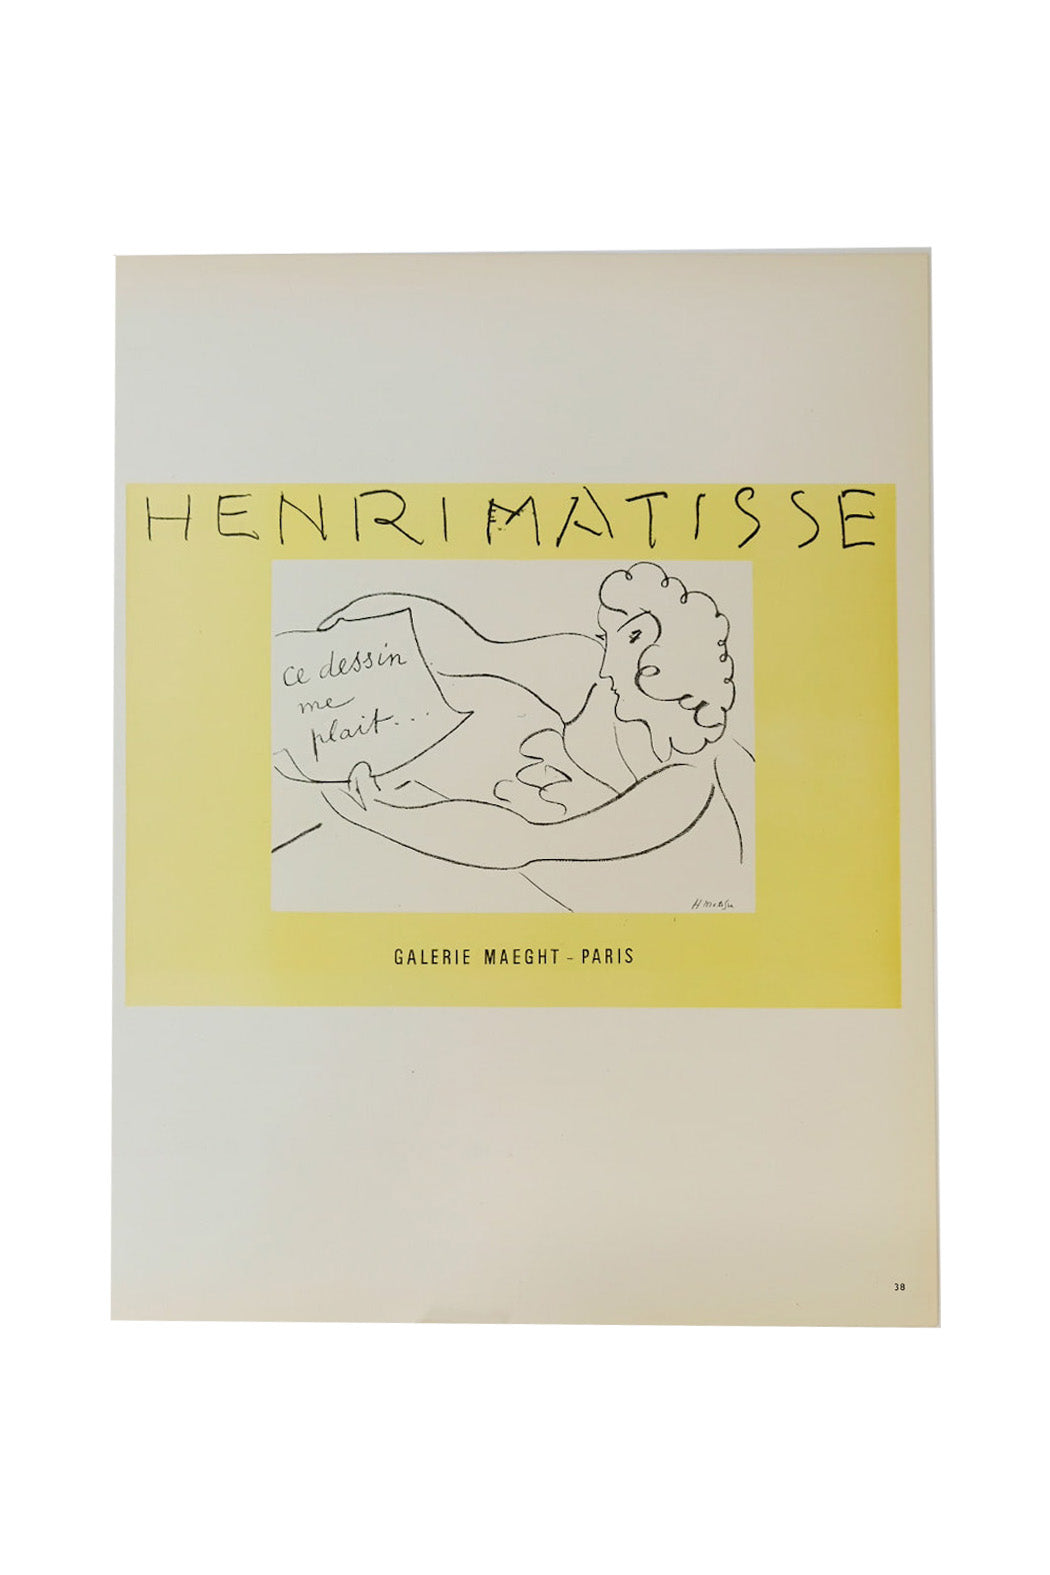 Henri Matisse Ce Dessin Me Plait Page 38